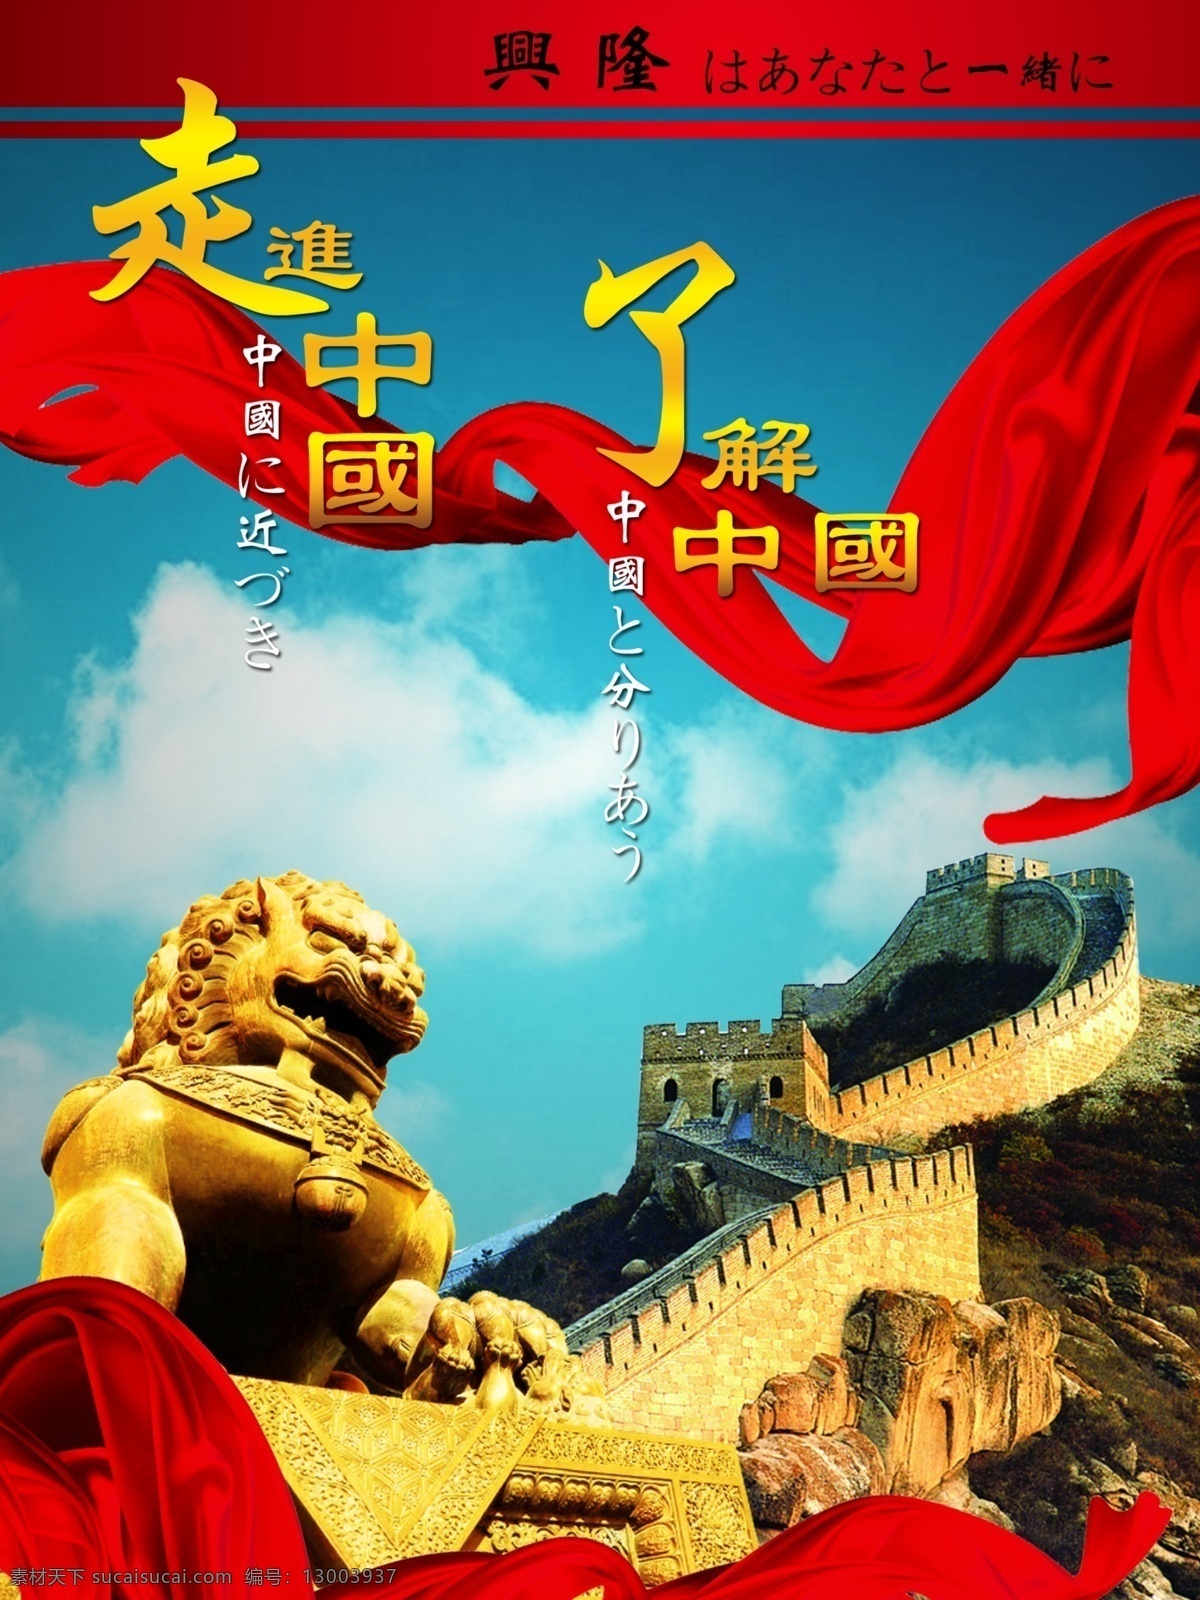 走进 中国 长城 文化 走进中国 了解中国 兴隆 日文 飘带 狮子 雄狮 蓝天白云 广告设计模板 源文件 分层 红色